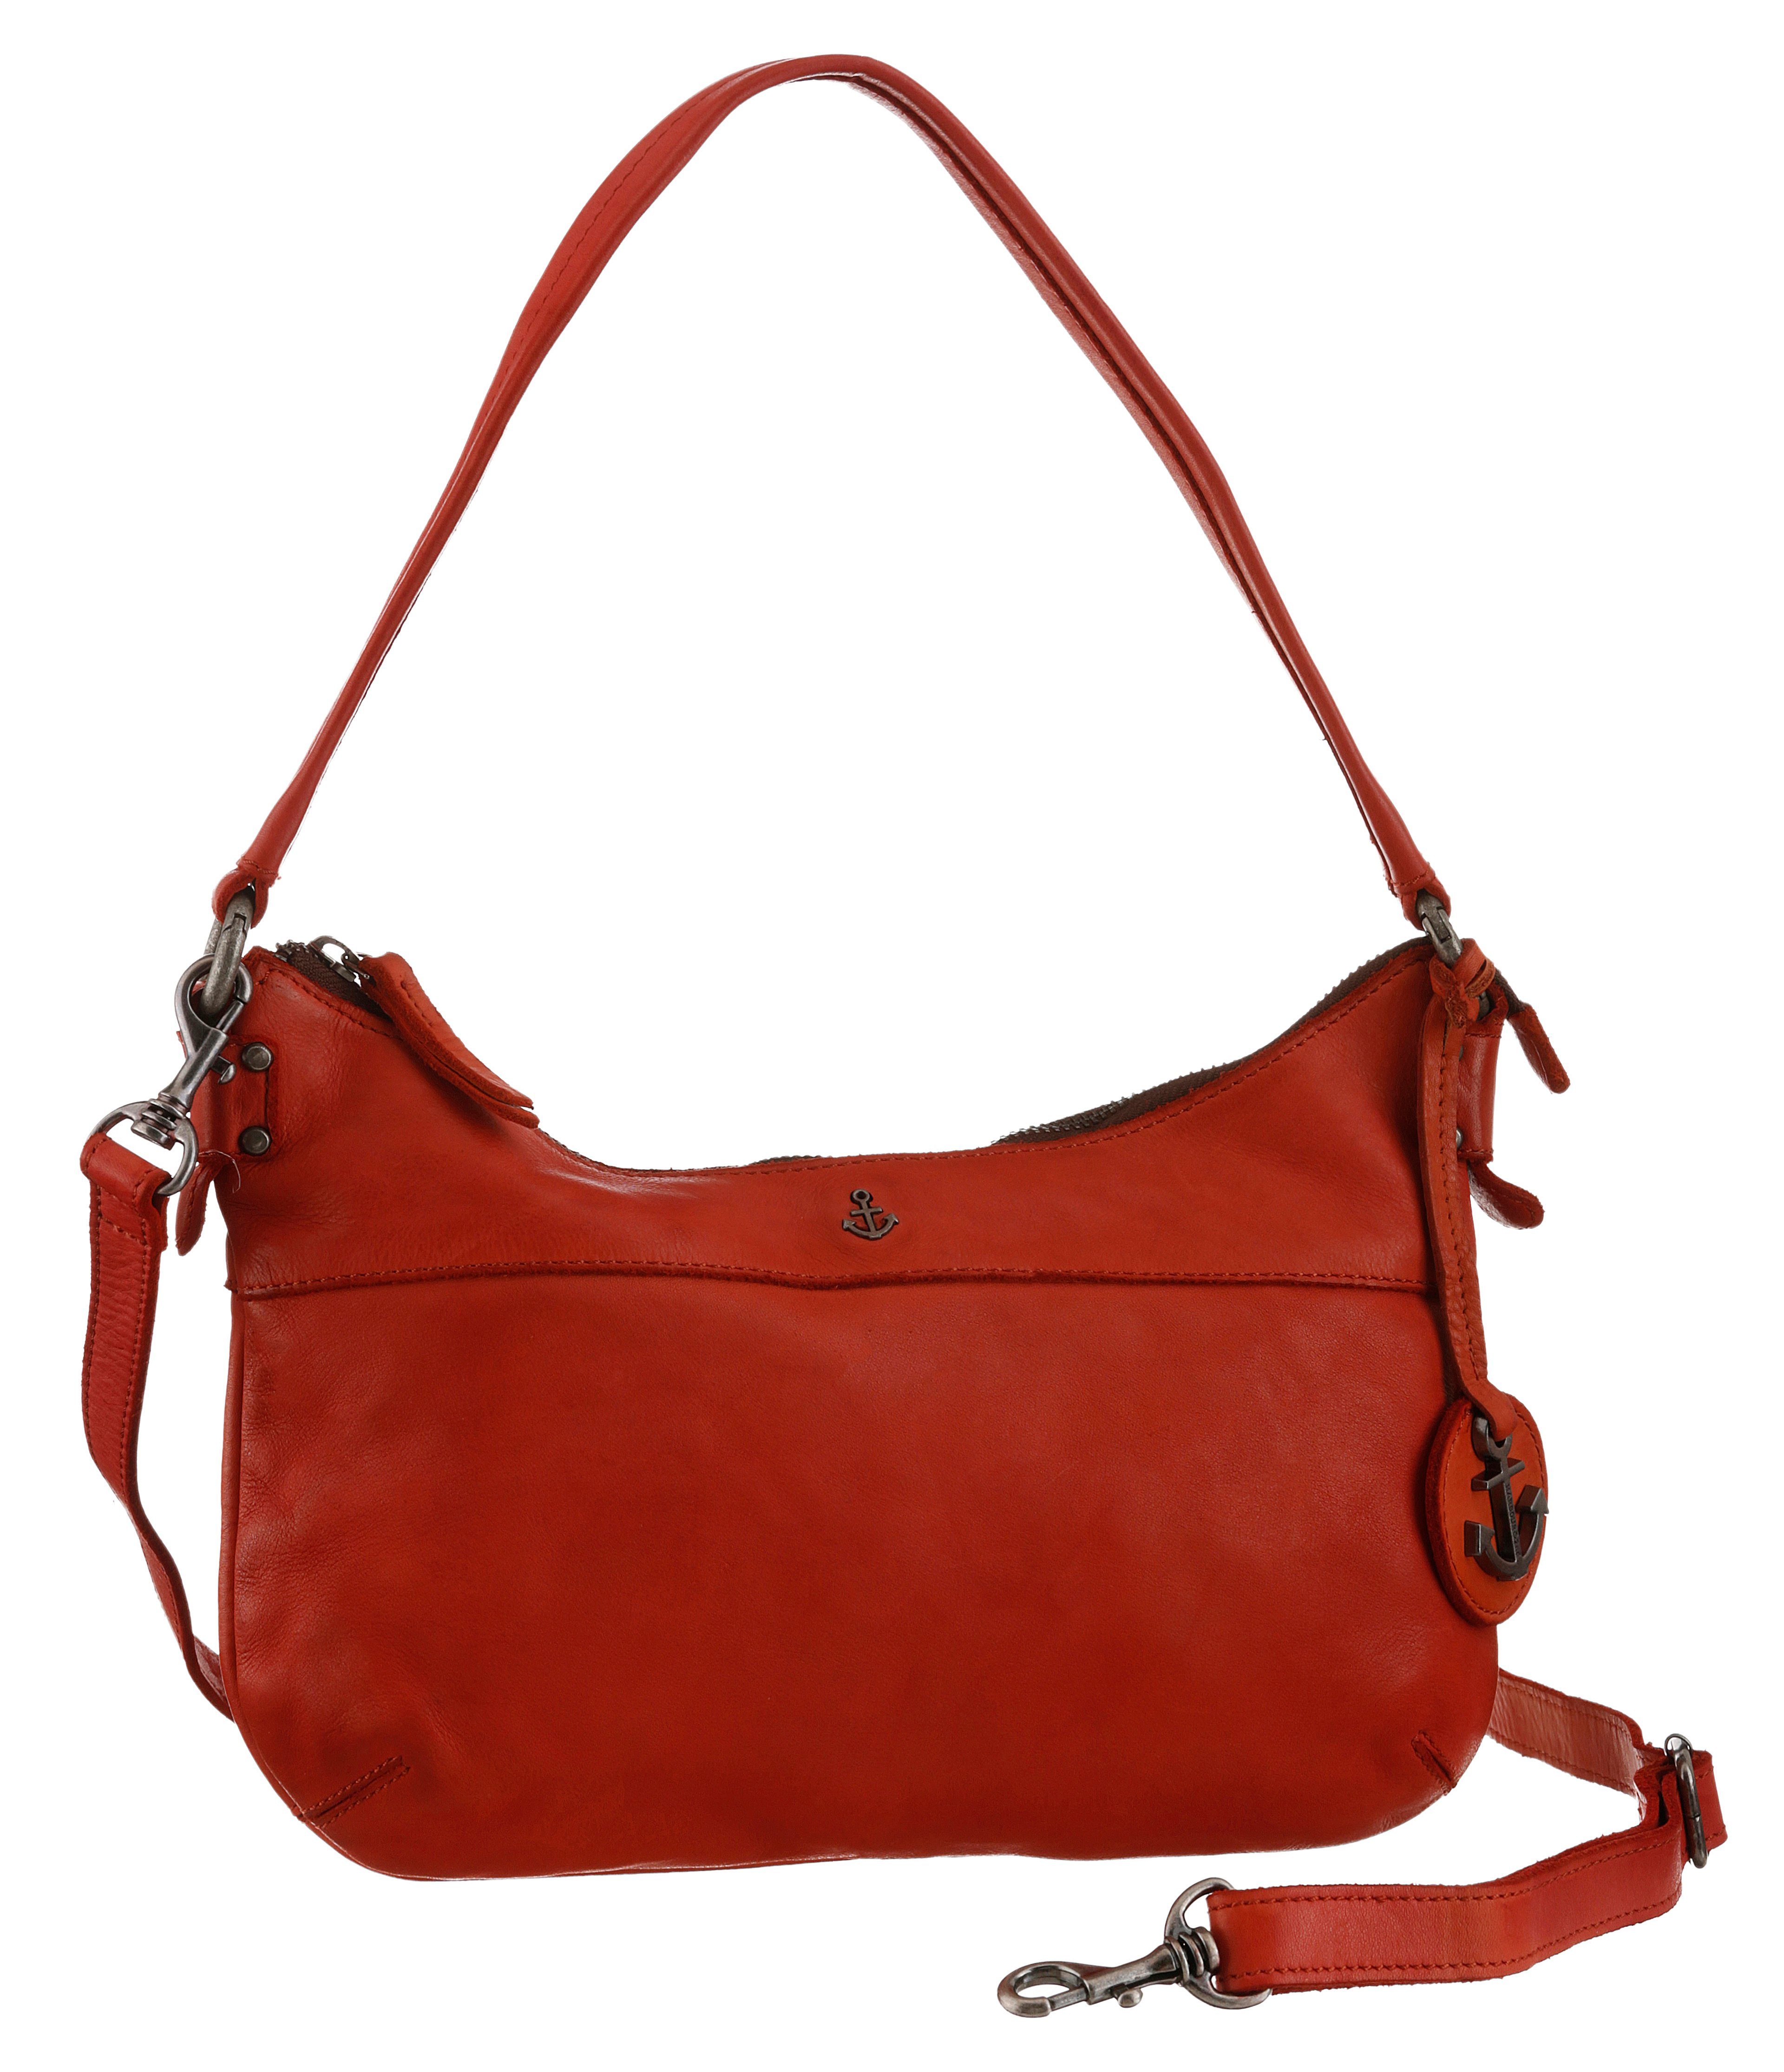 Damen Leder Handtaschen online kaufen | OTTO